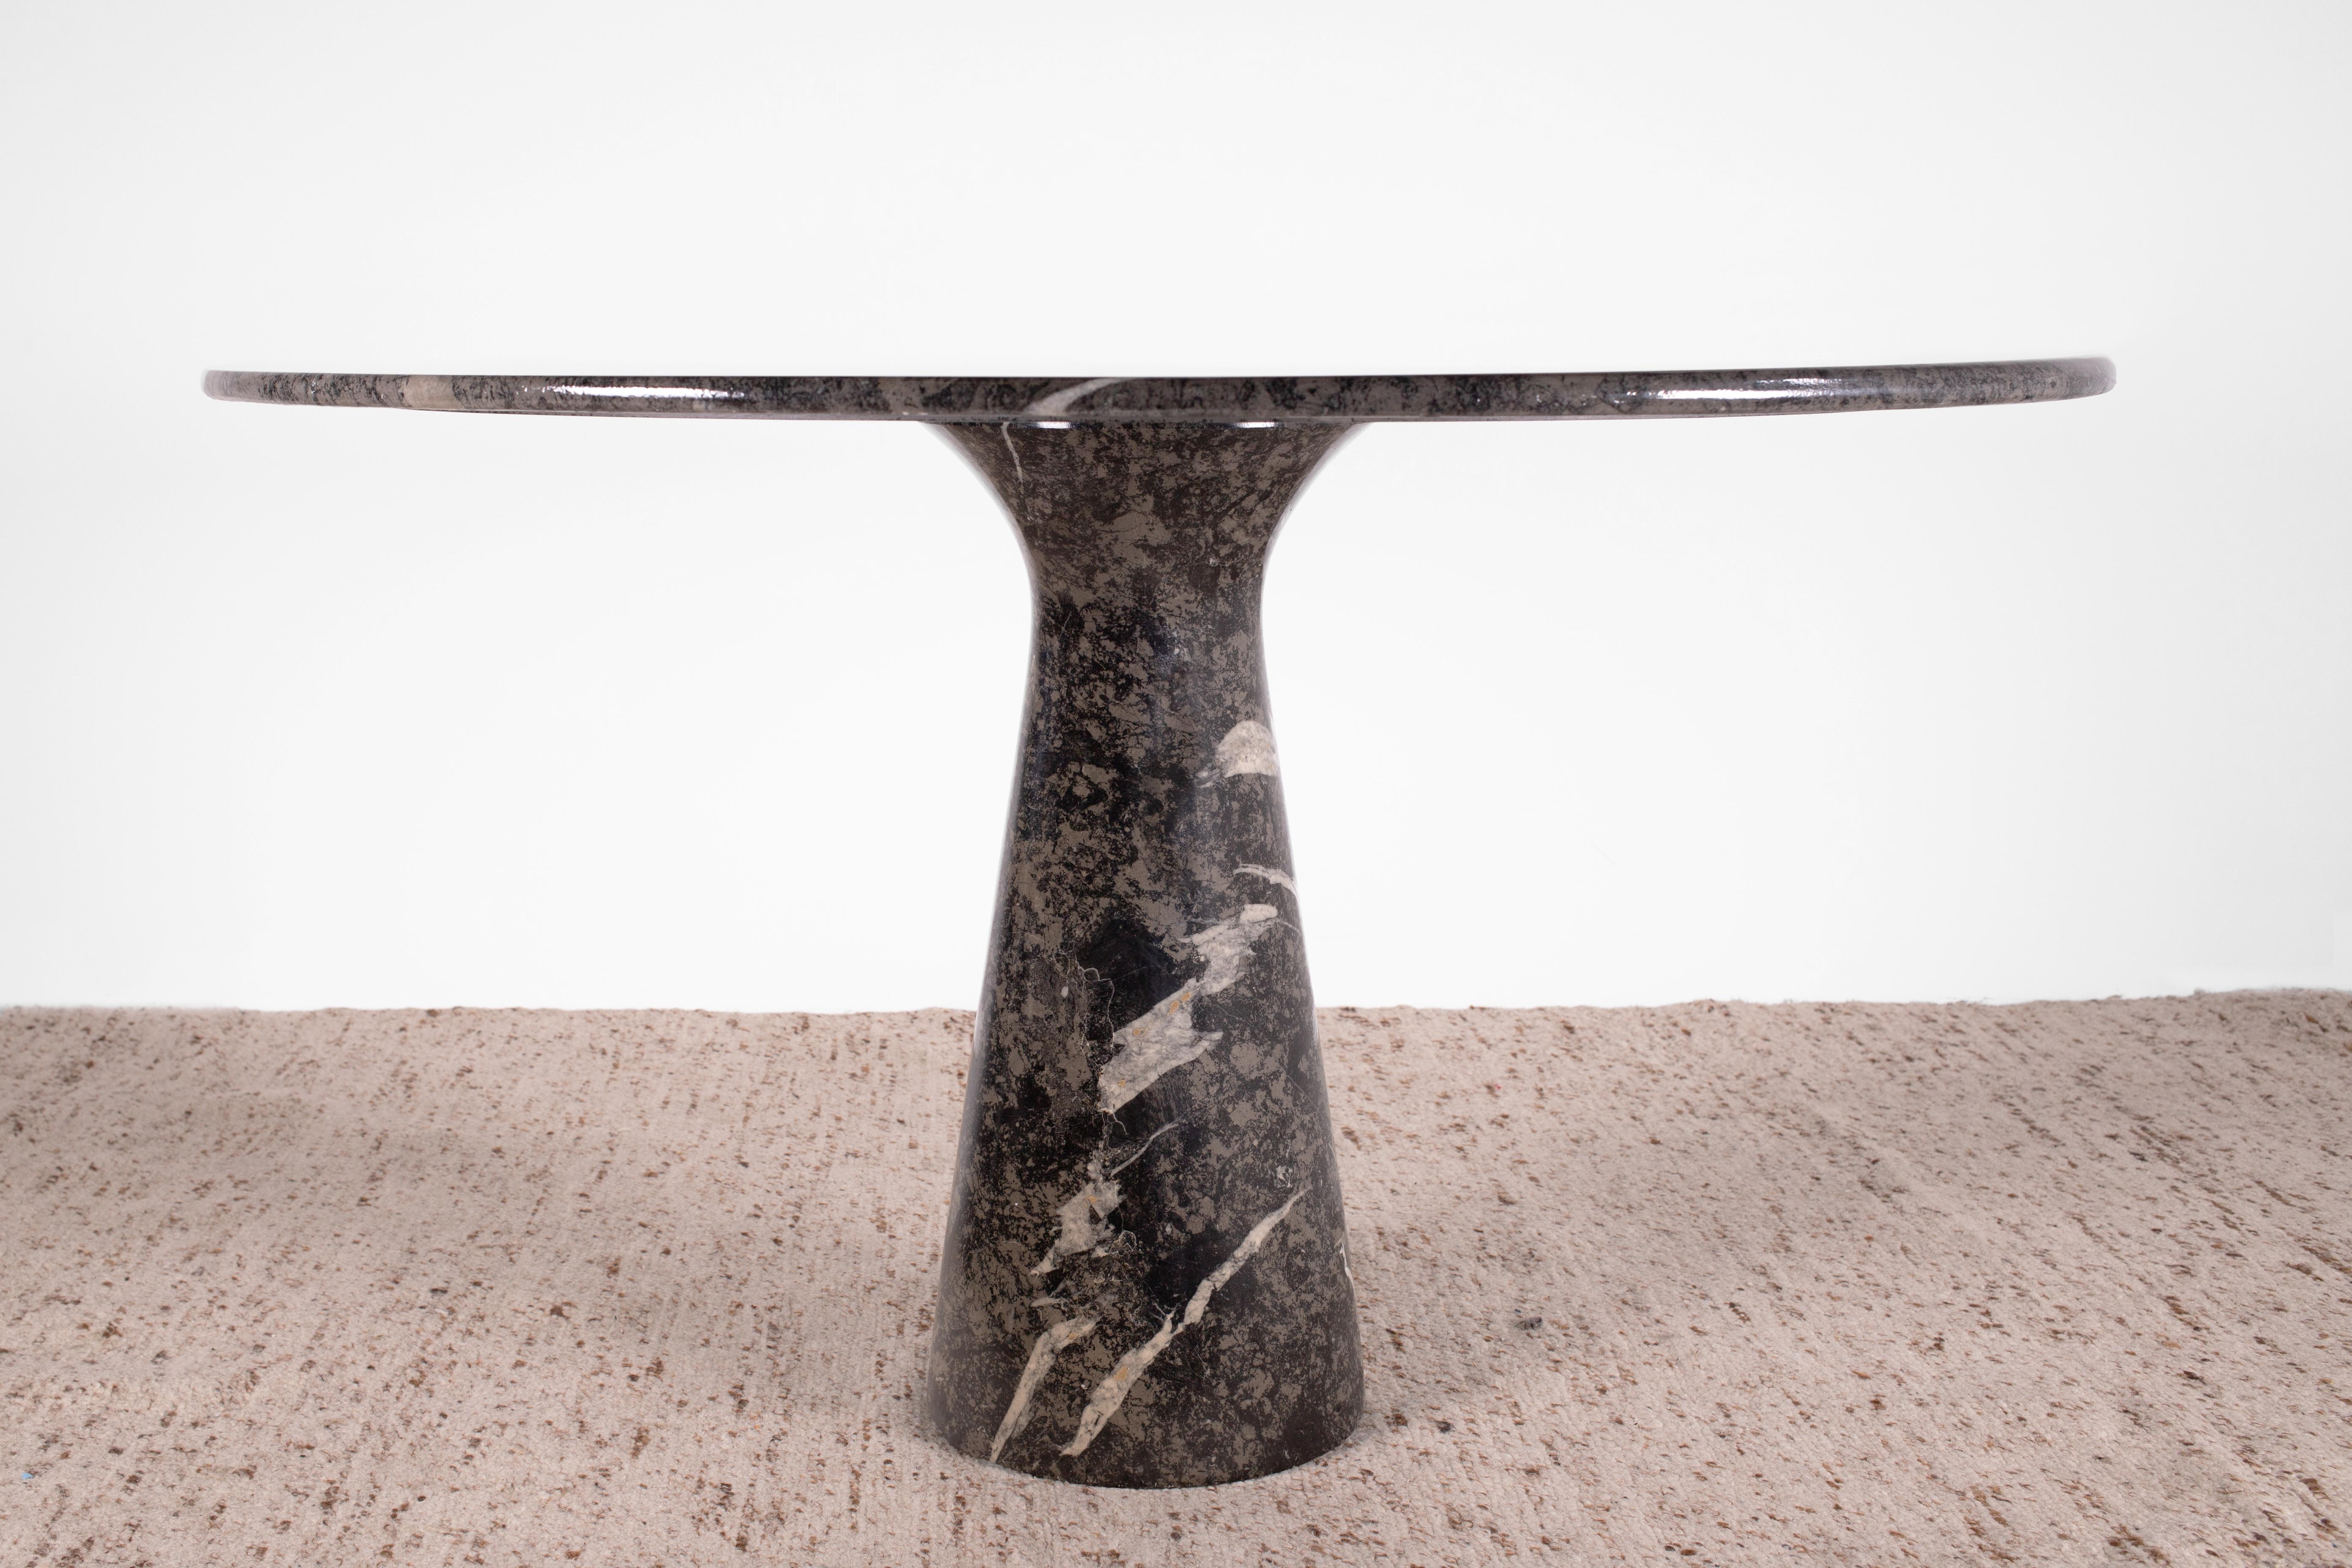 1970s Organic Modern Angelo Mangiarotti round pedestal dining table for Skipper in highly figured gray Fior Di Bosco marble. Cette table fait partie de la série M et mesure 47 pouces (120 cm) de diamètre.

Le plateau rond amovible a manifestement